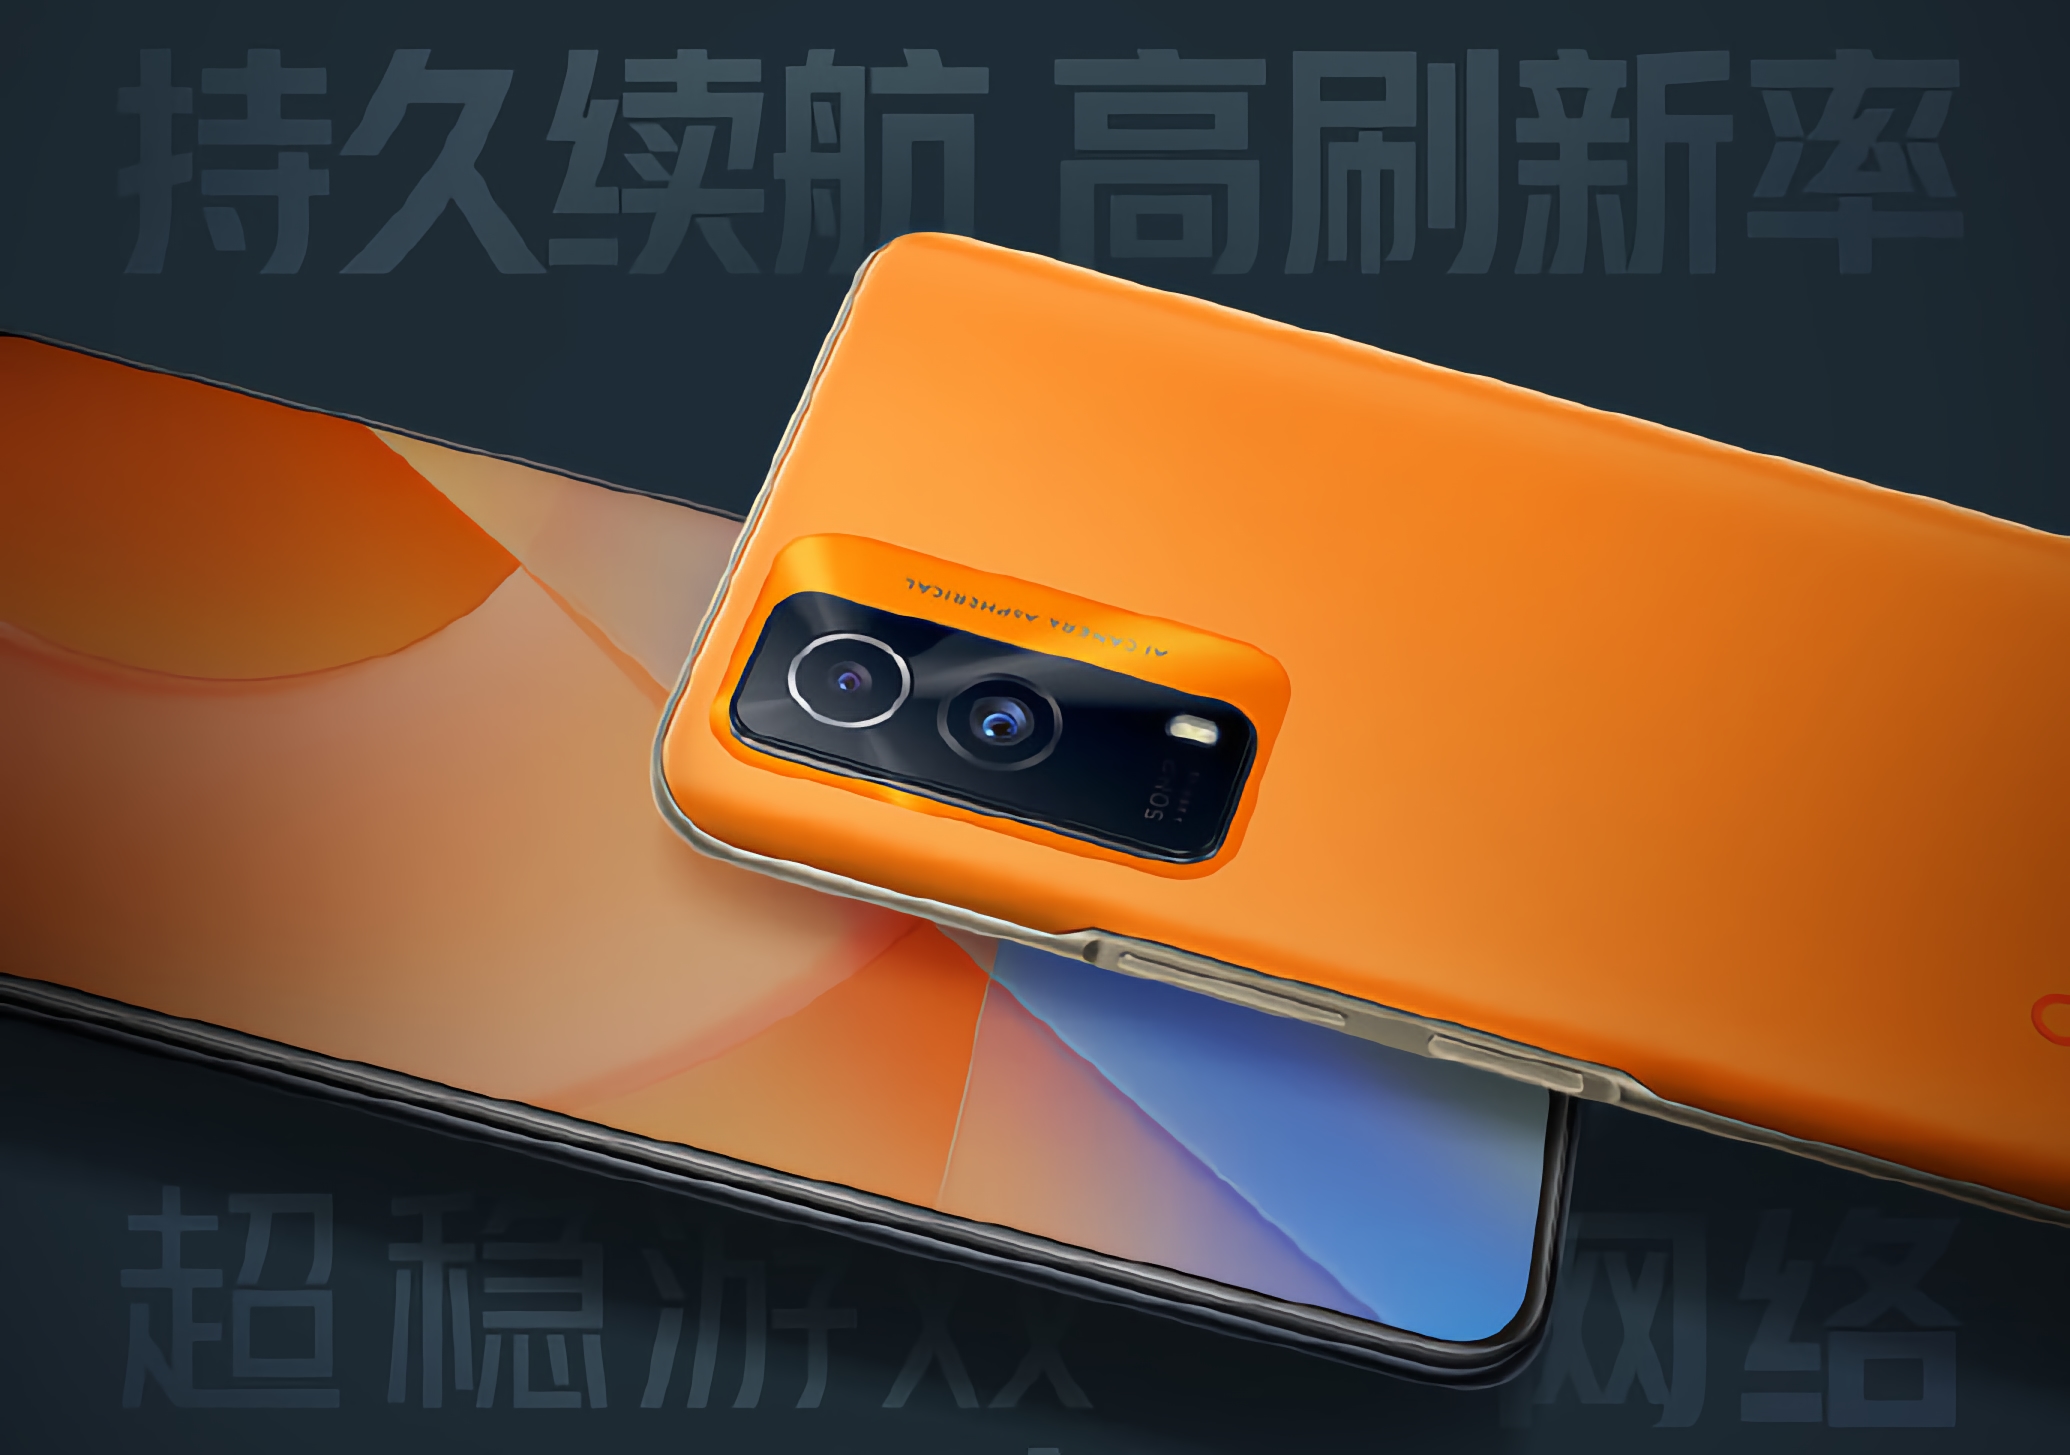 Vivo presentará el smartphone iQOO Z5x con procesador MediaTek Dimensity 900 a bordo y cámara de 50 MP el 20 de octubre